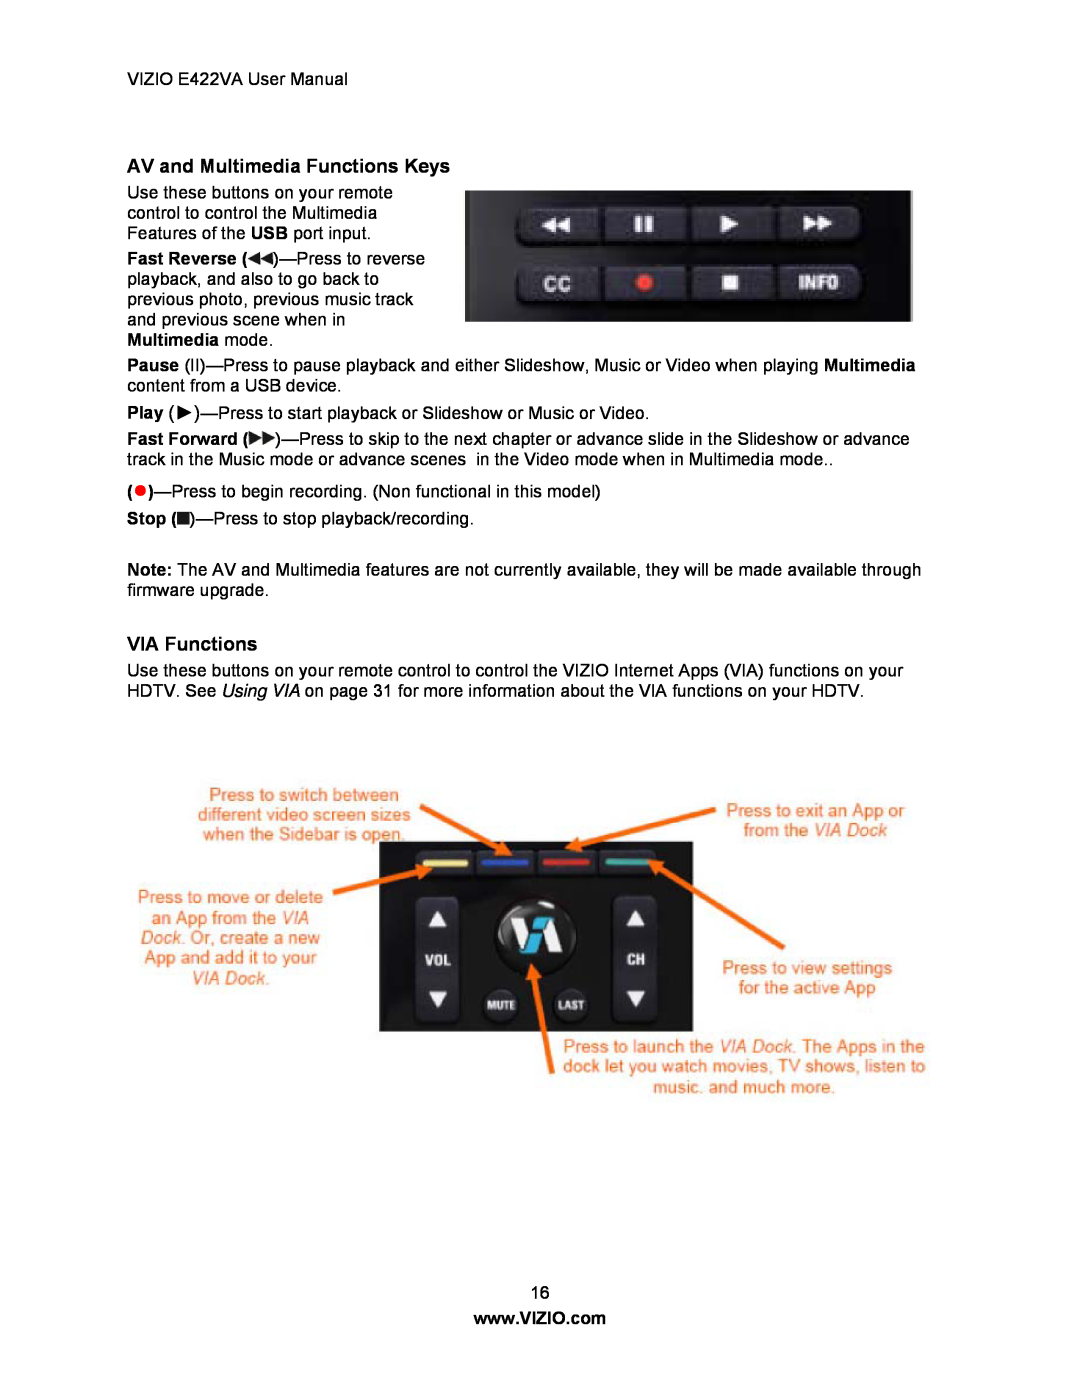 Xerox E422VA user manual AV and Multimedia Functions Keys, VIA Functions 